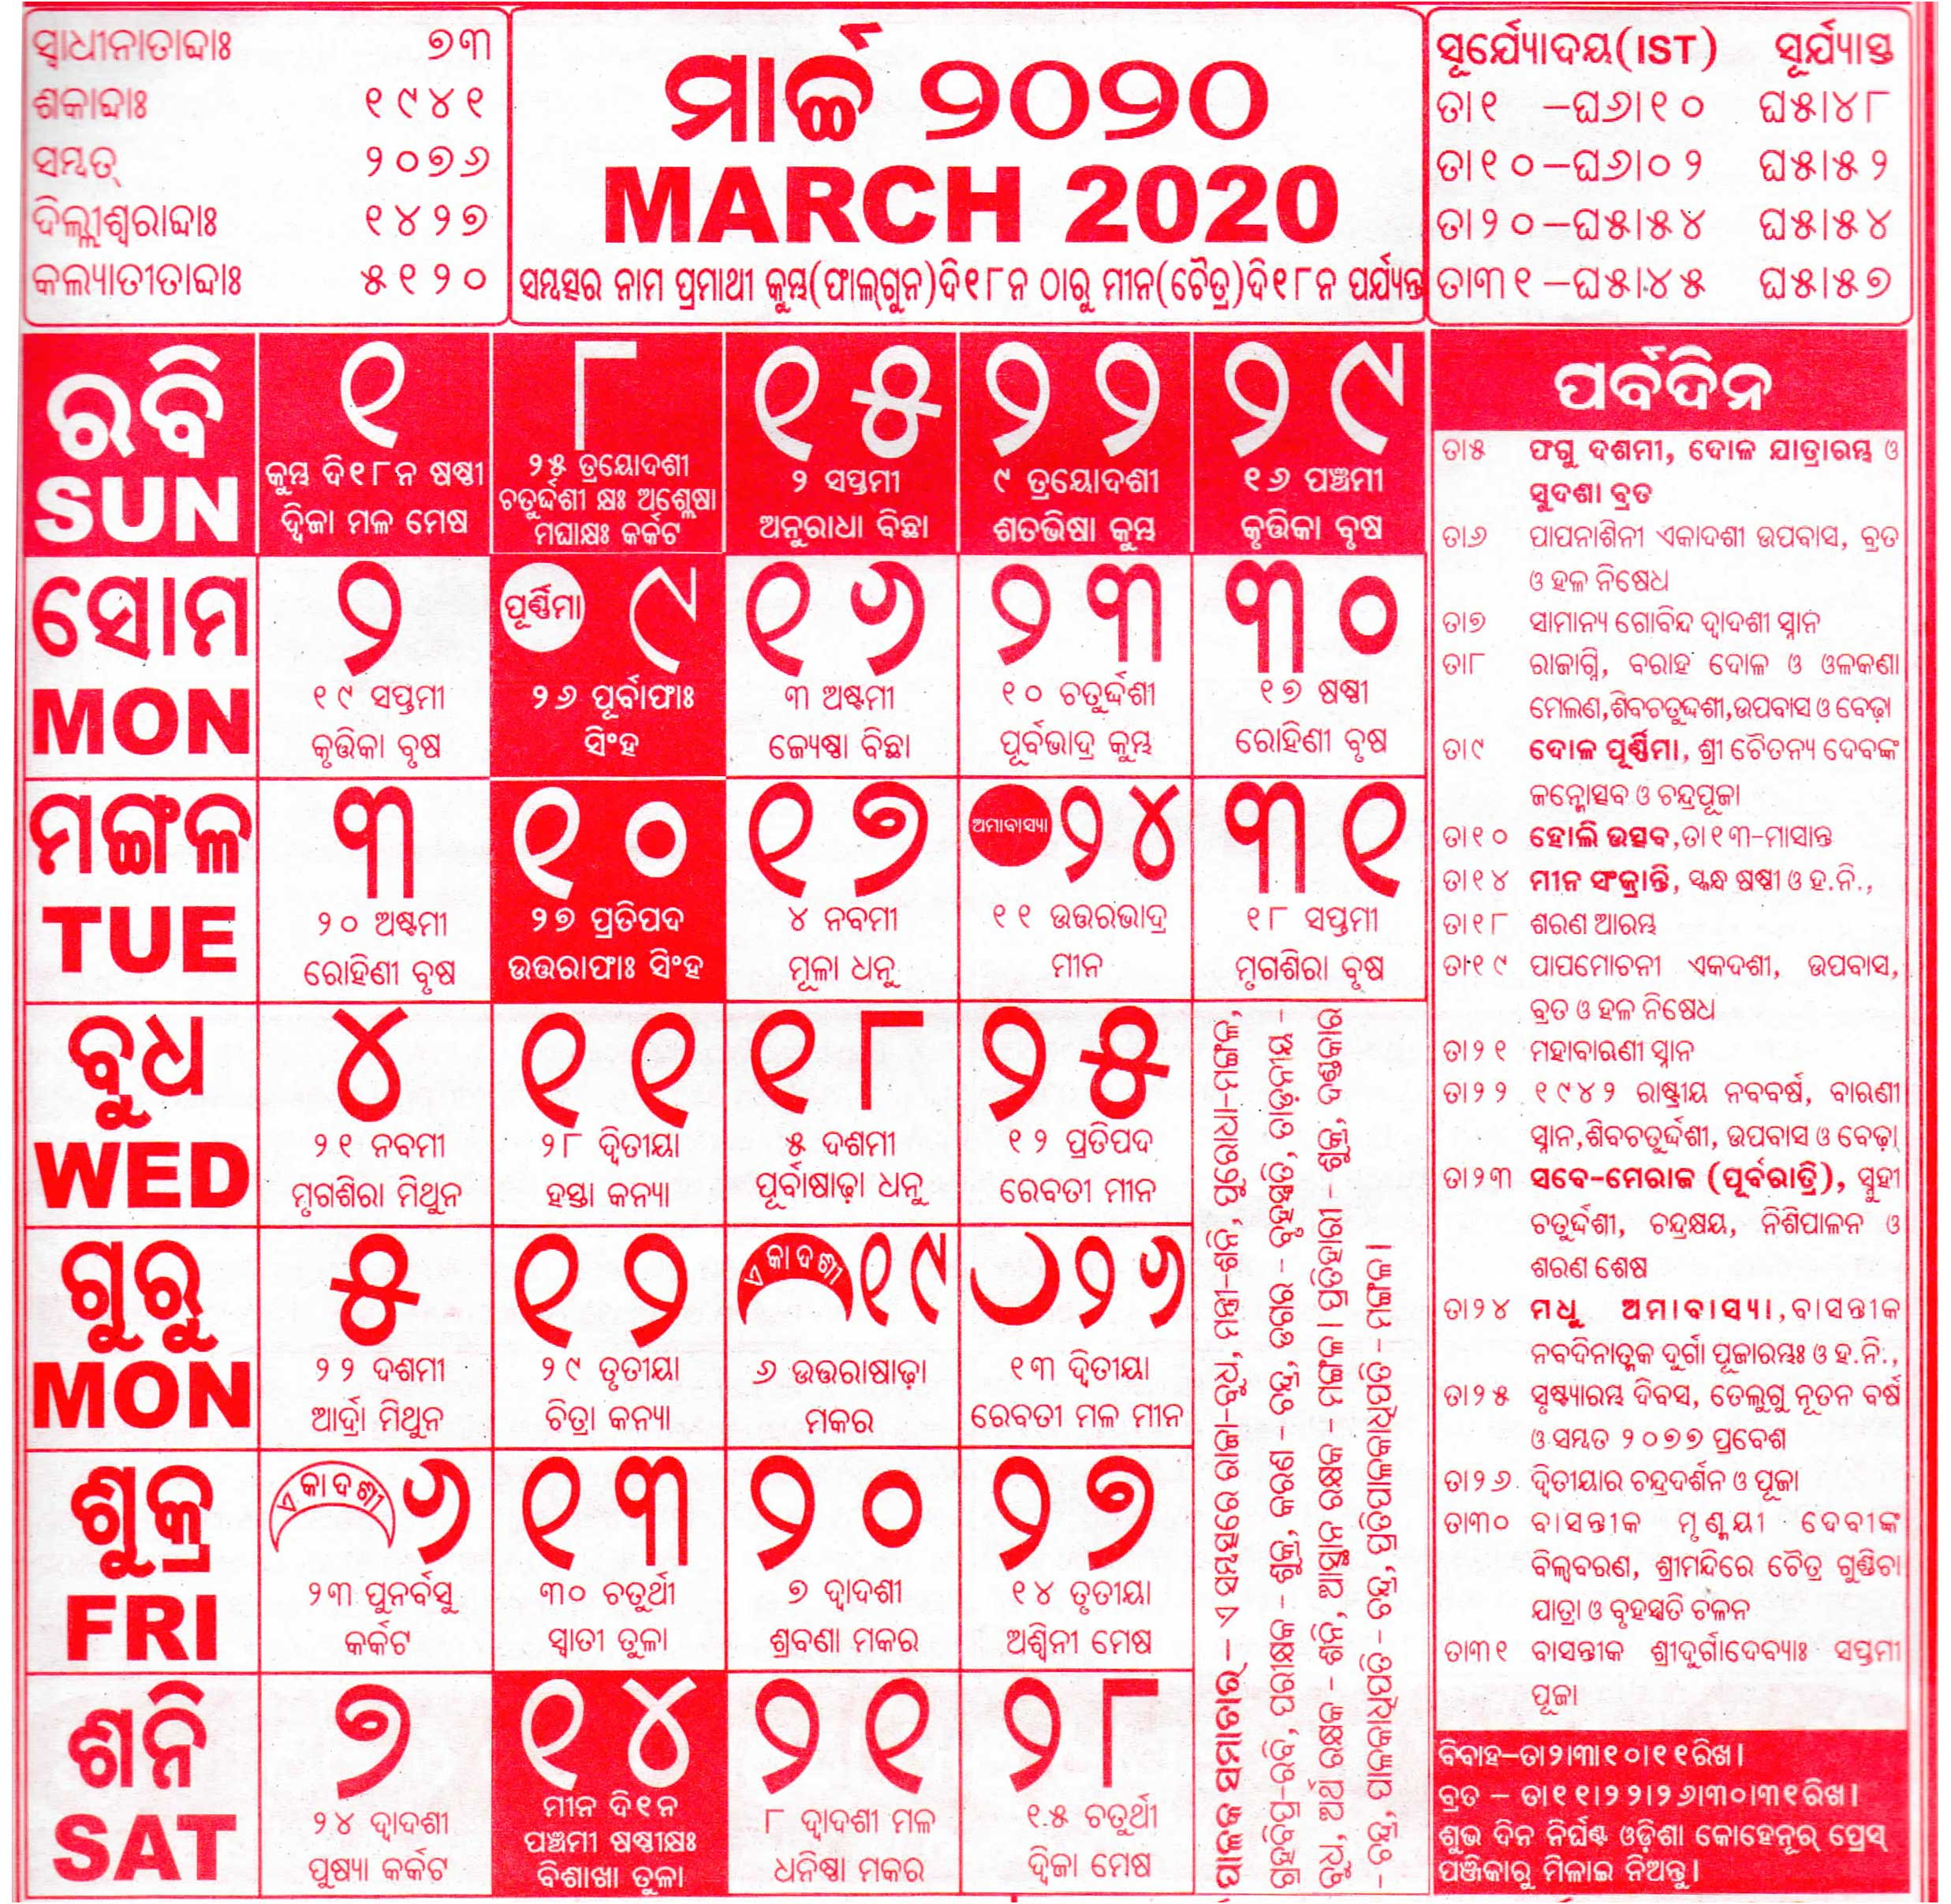 Odia Calendar March 2020 | | Calendarcraft with Odia Calendar February 2020